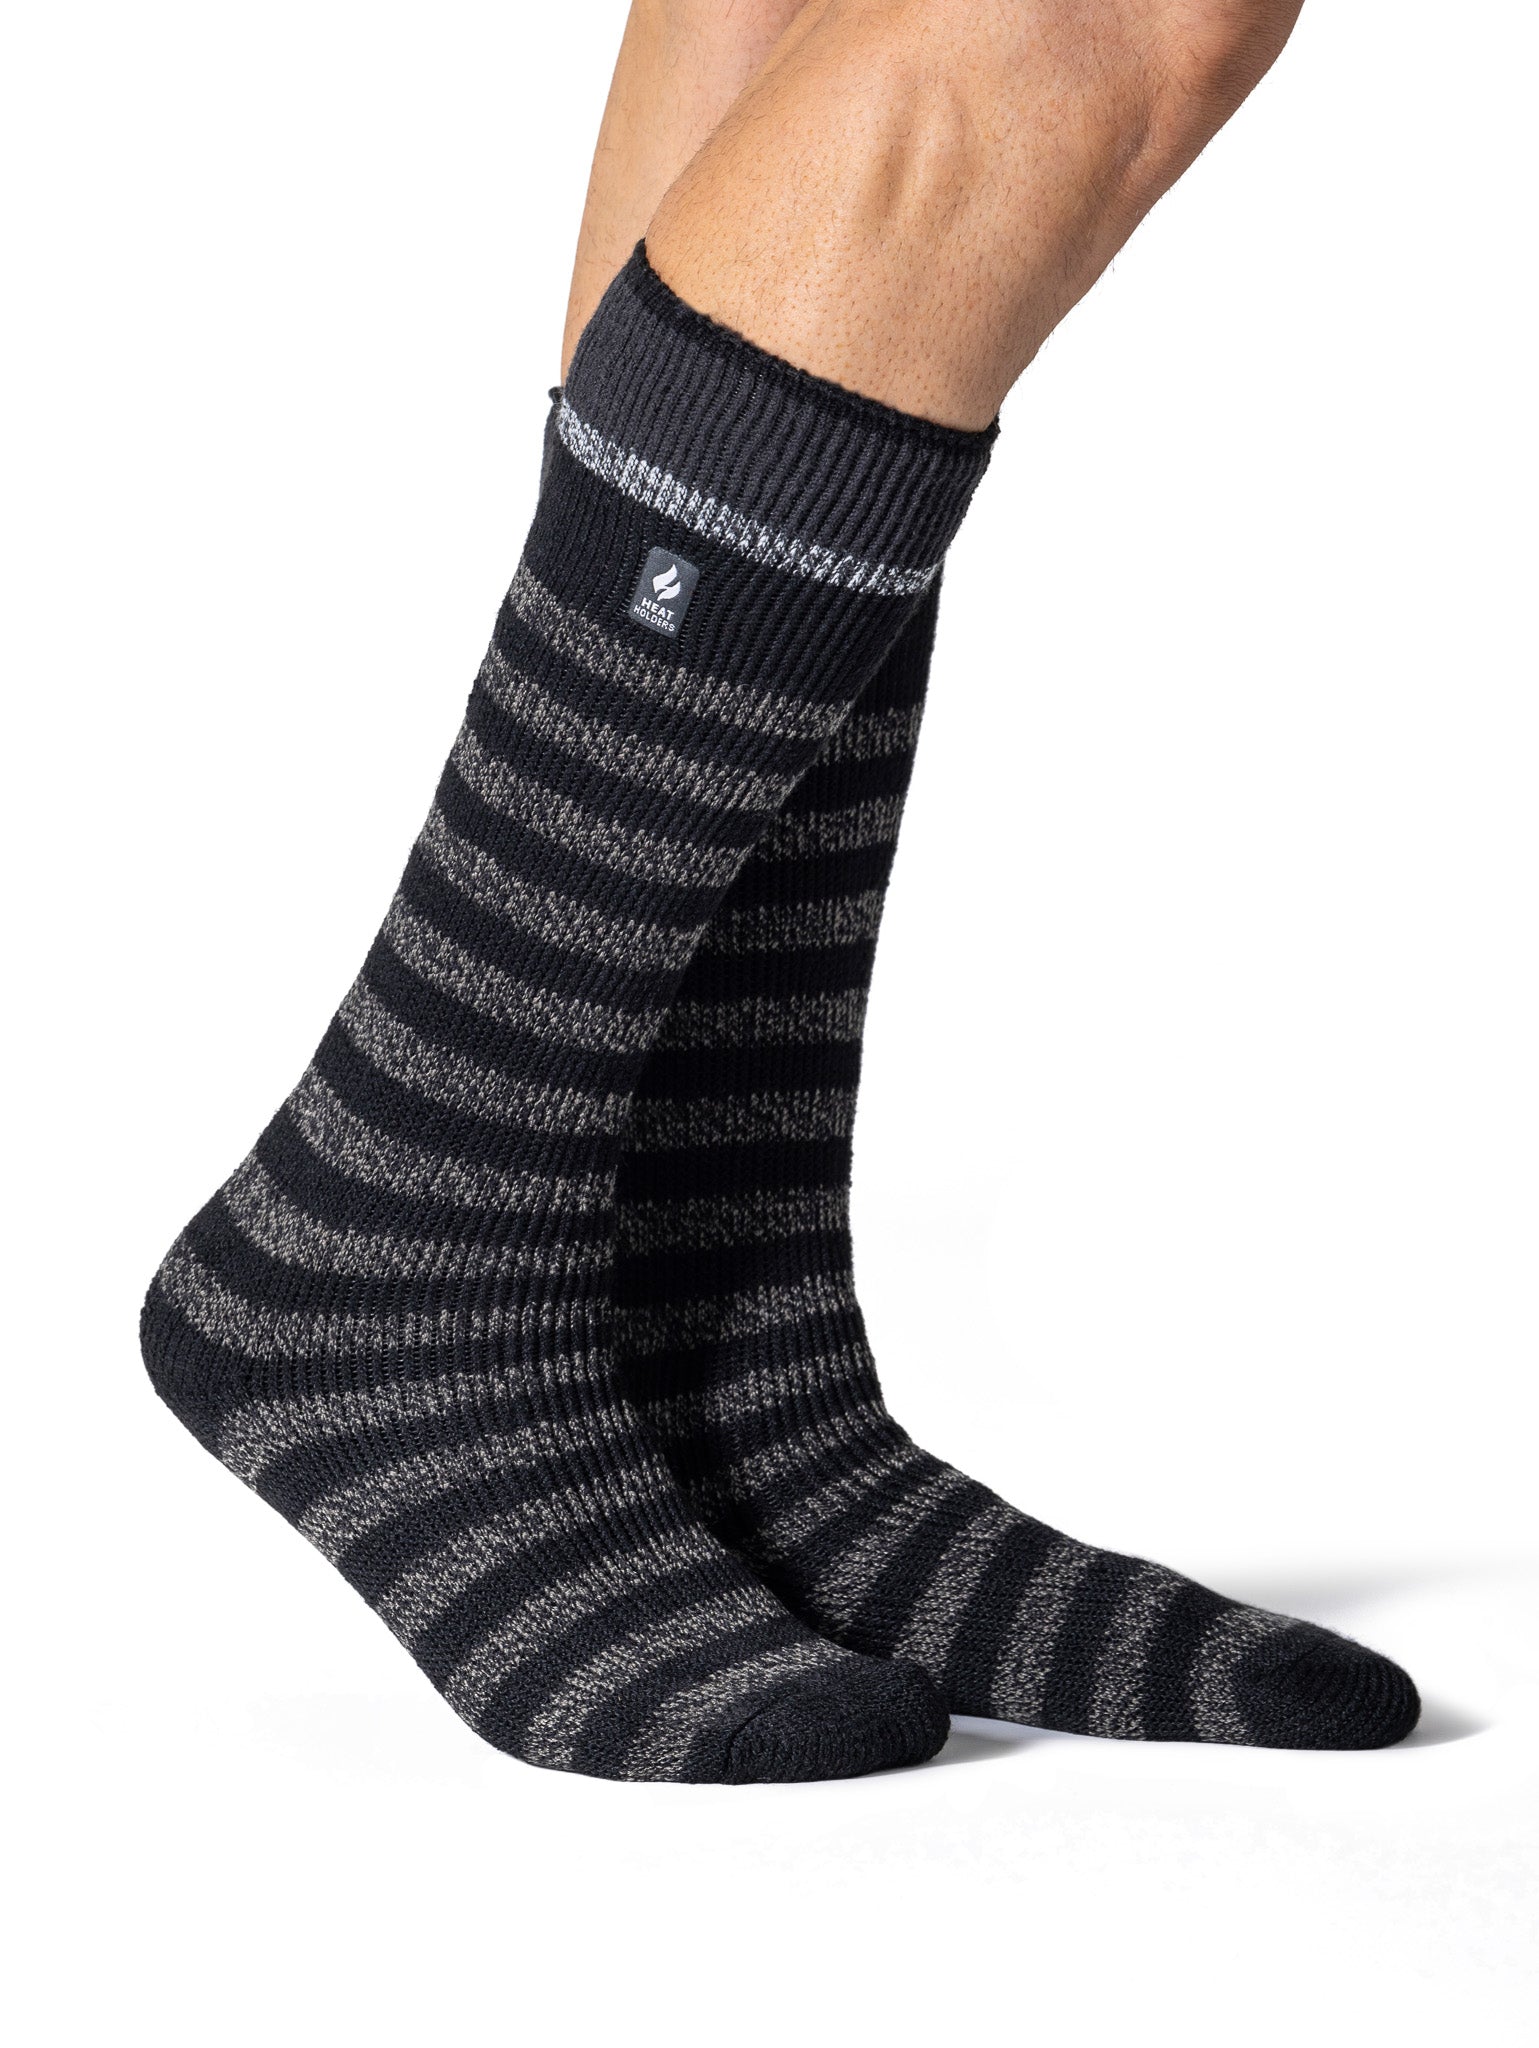 HEAT HOLDERS Original Ultimate Thermal Long Sock-Mens